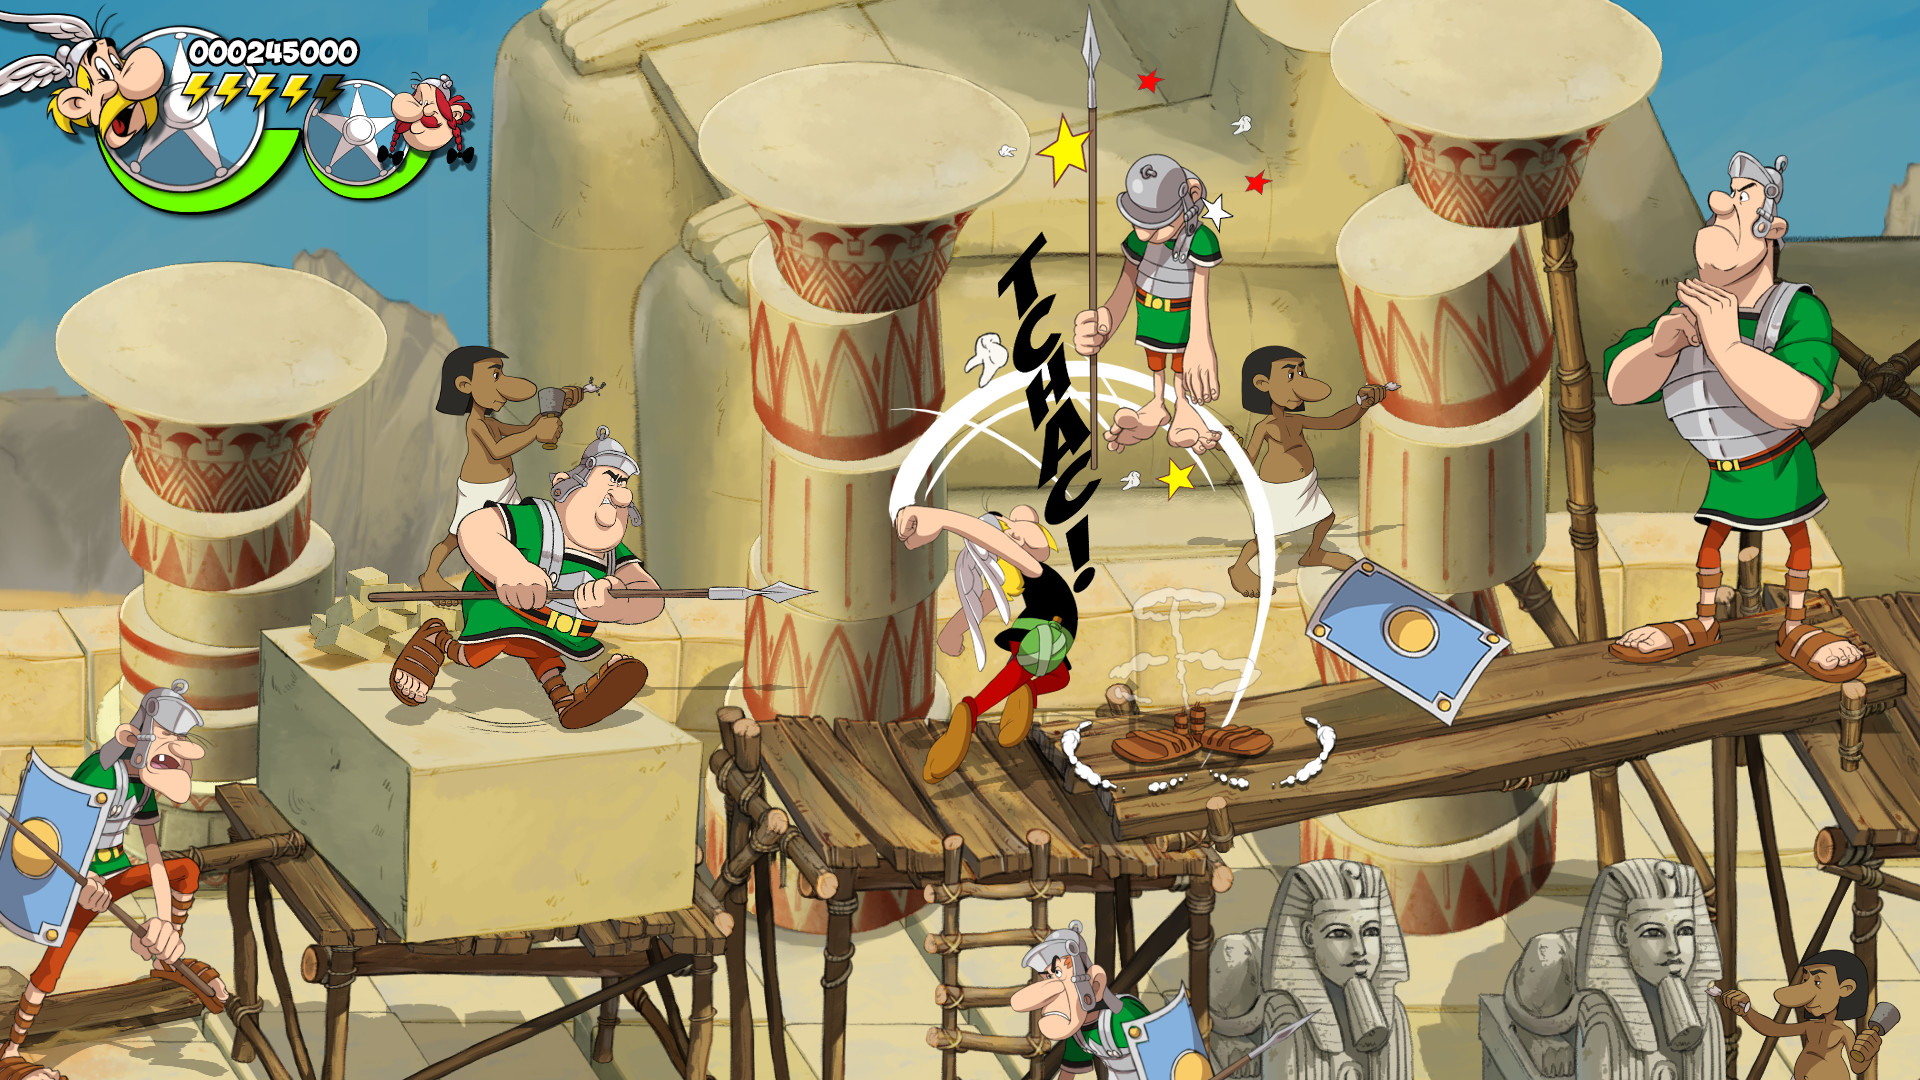 Asterix & Obelix: Slap them All! - screenshot 3